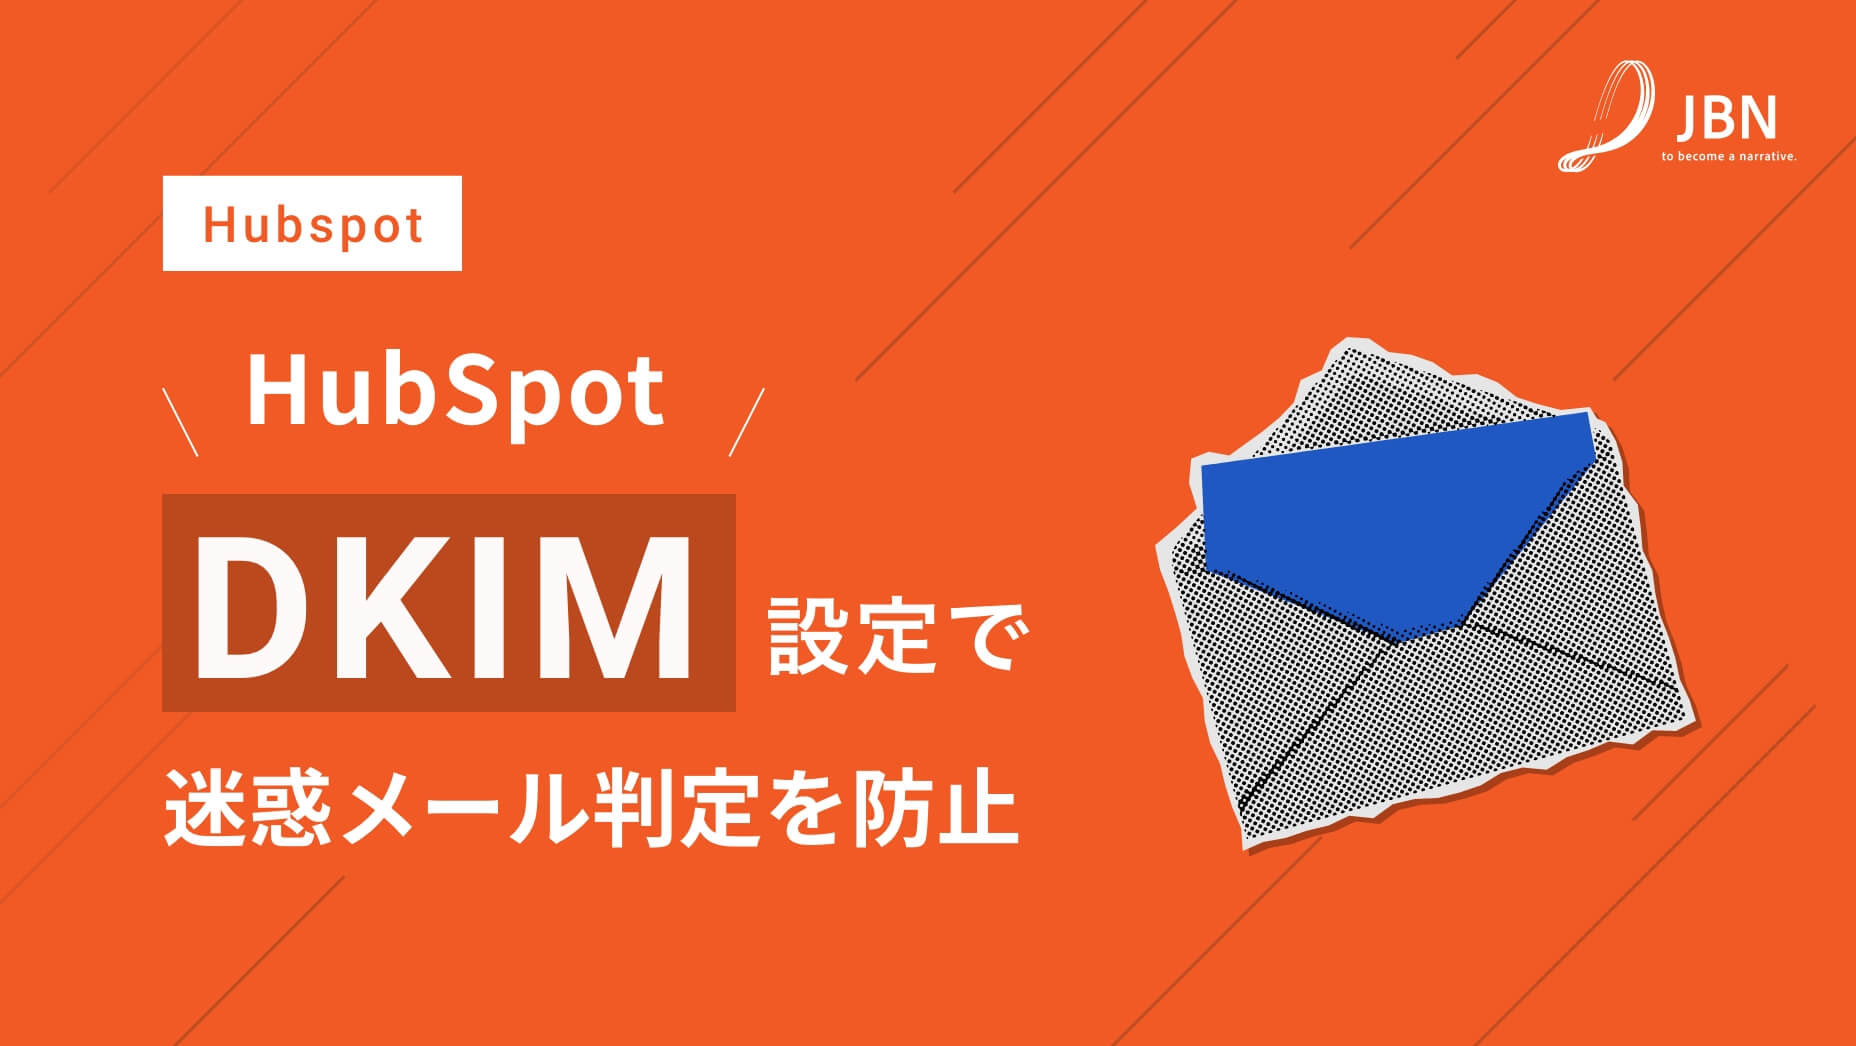 迷惑メール判定を防止するEメール送信ドメイン”DKIM”の設定